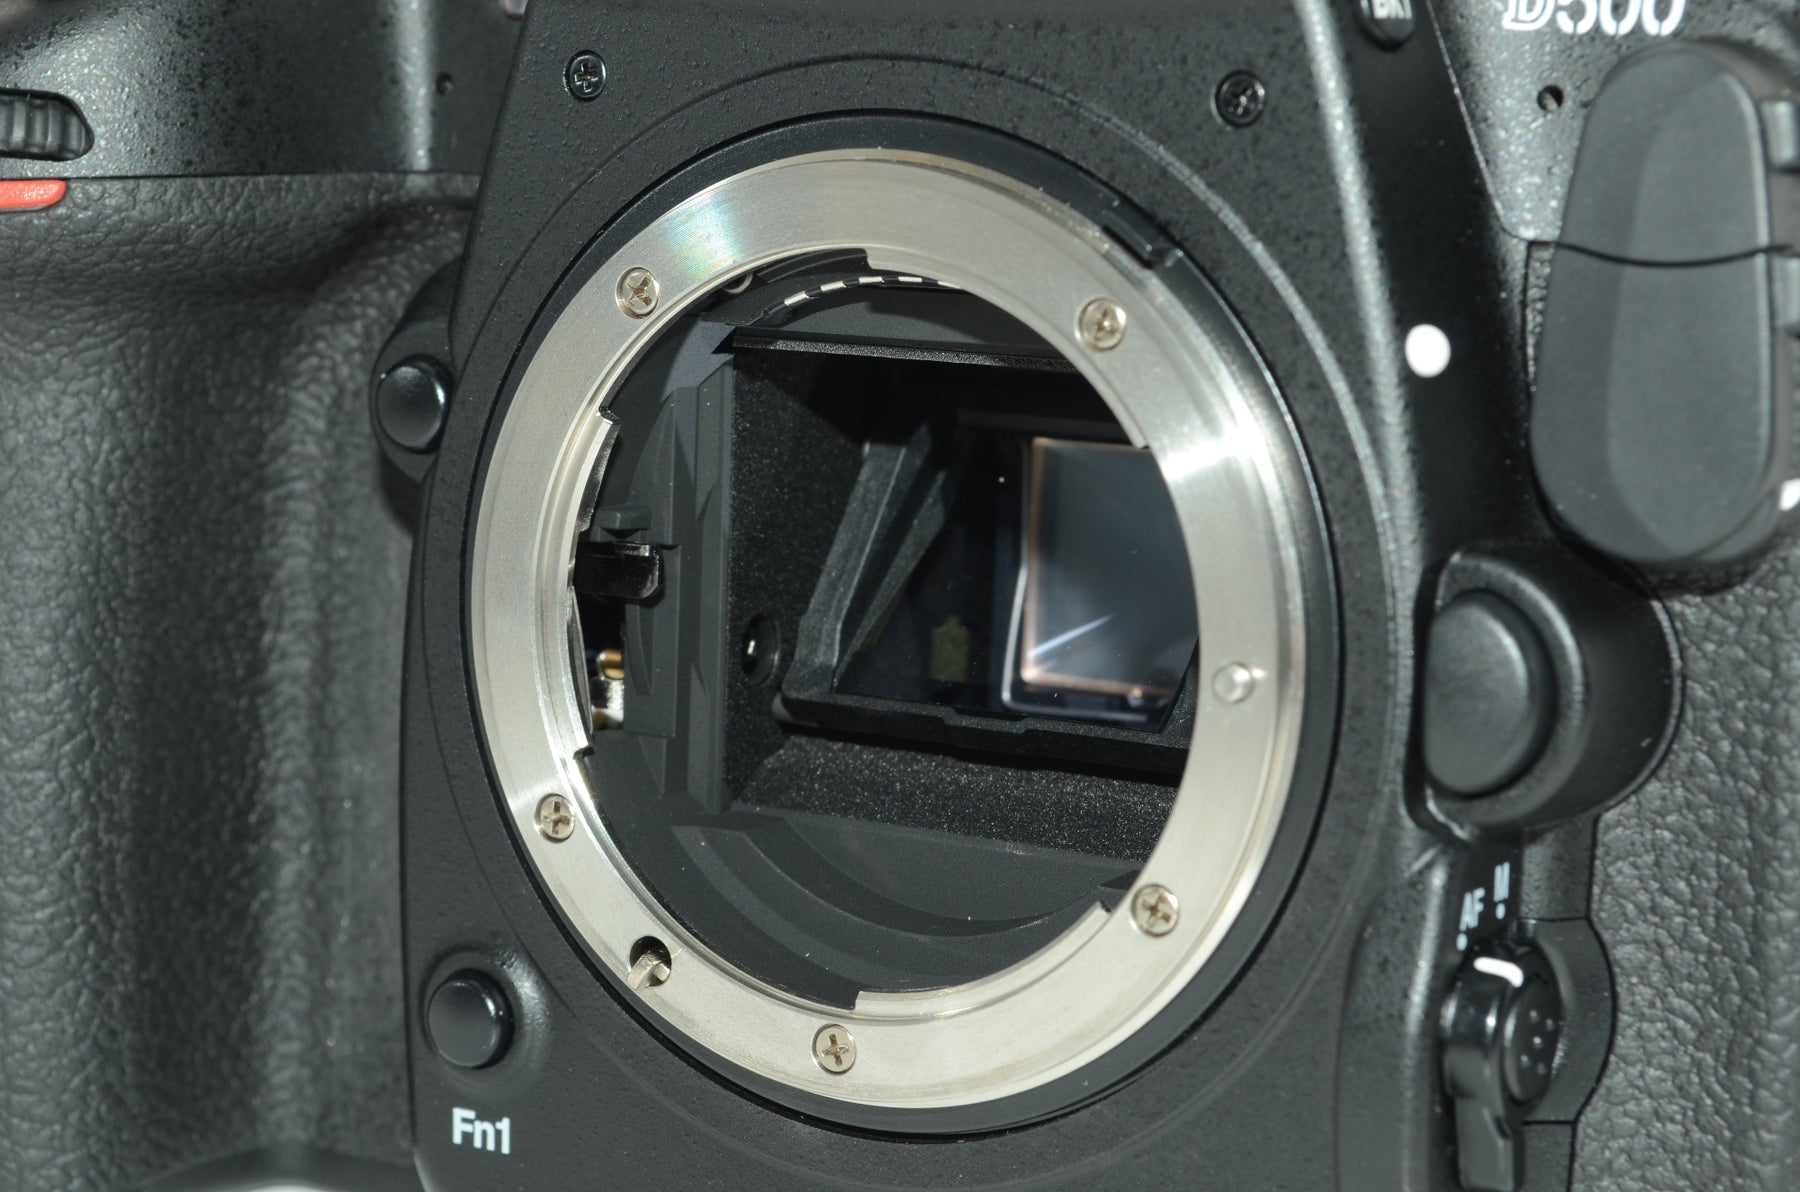 外観特上級】Nikon デジタル一眼レフカメラ D500 ボディ